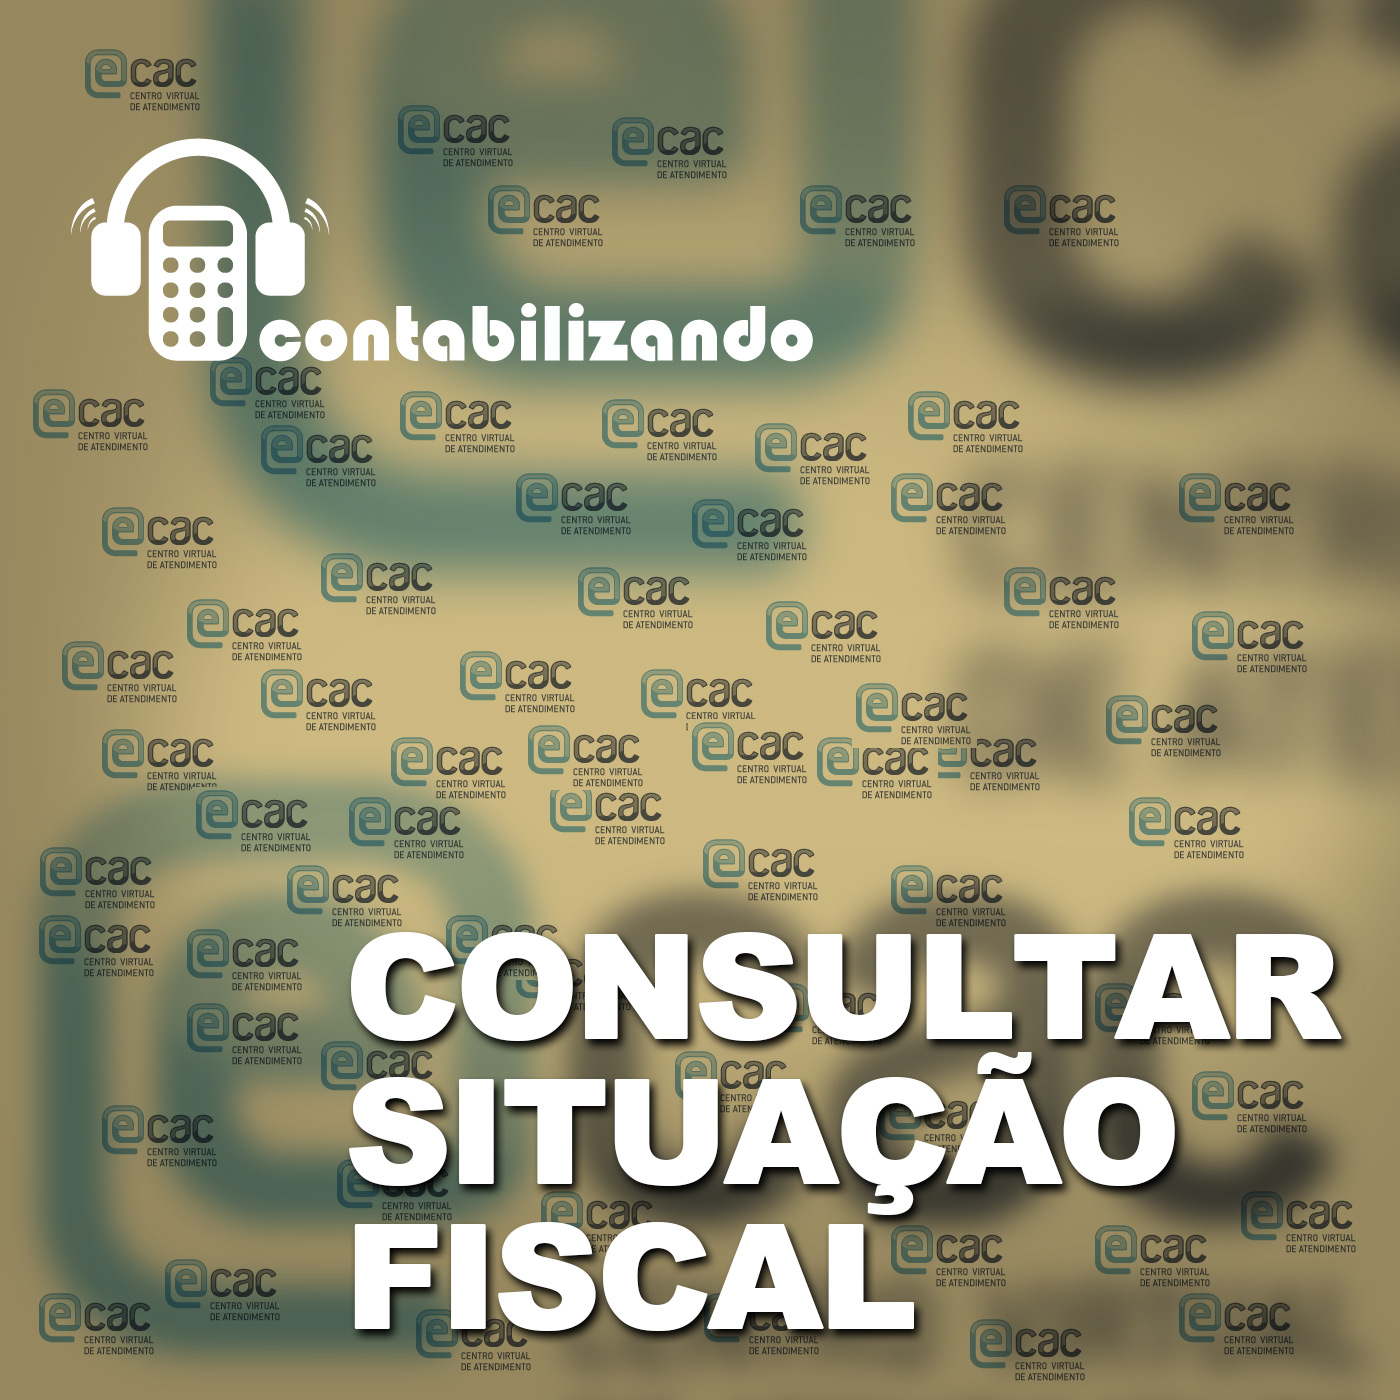 Contabilizando 13 - Situação Fiscal eCAC